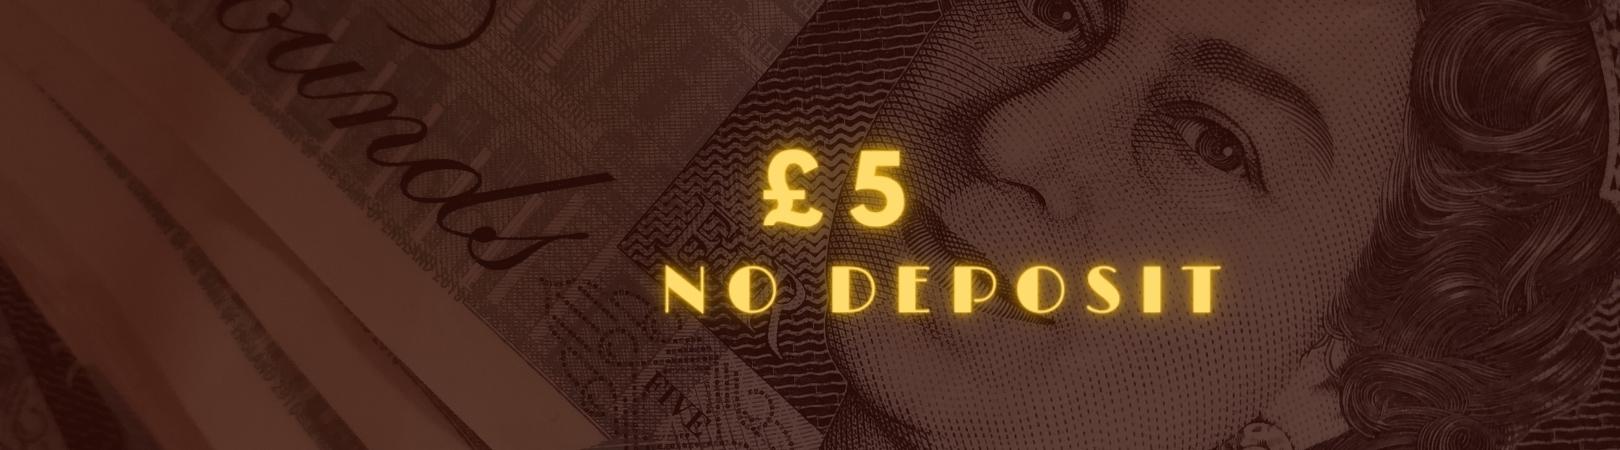 £5 no deposit img